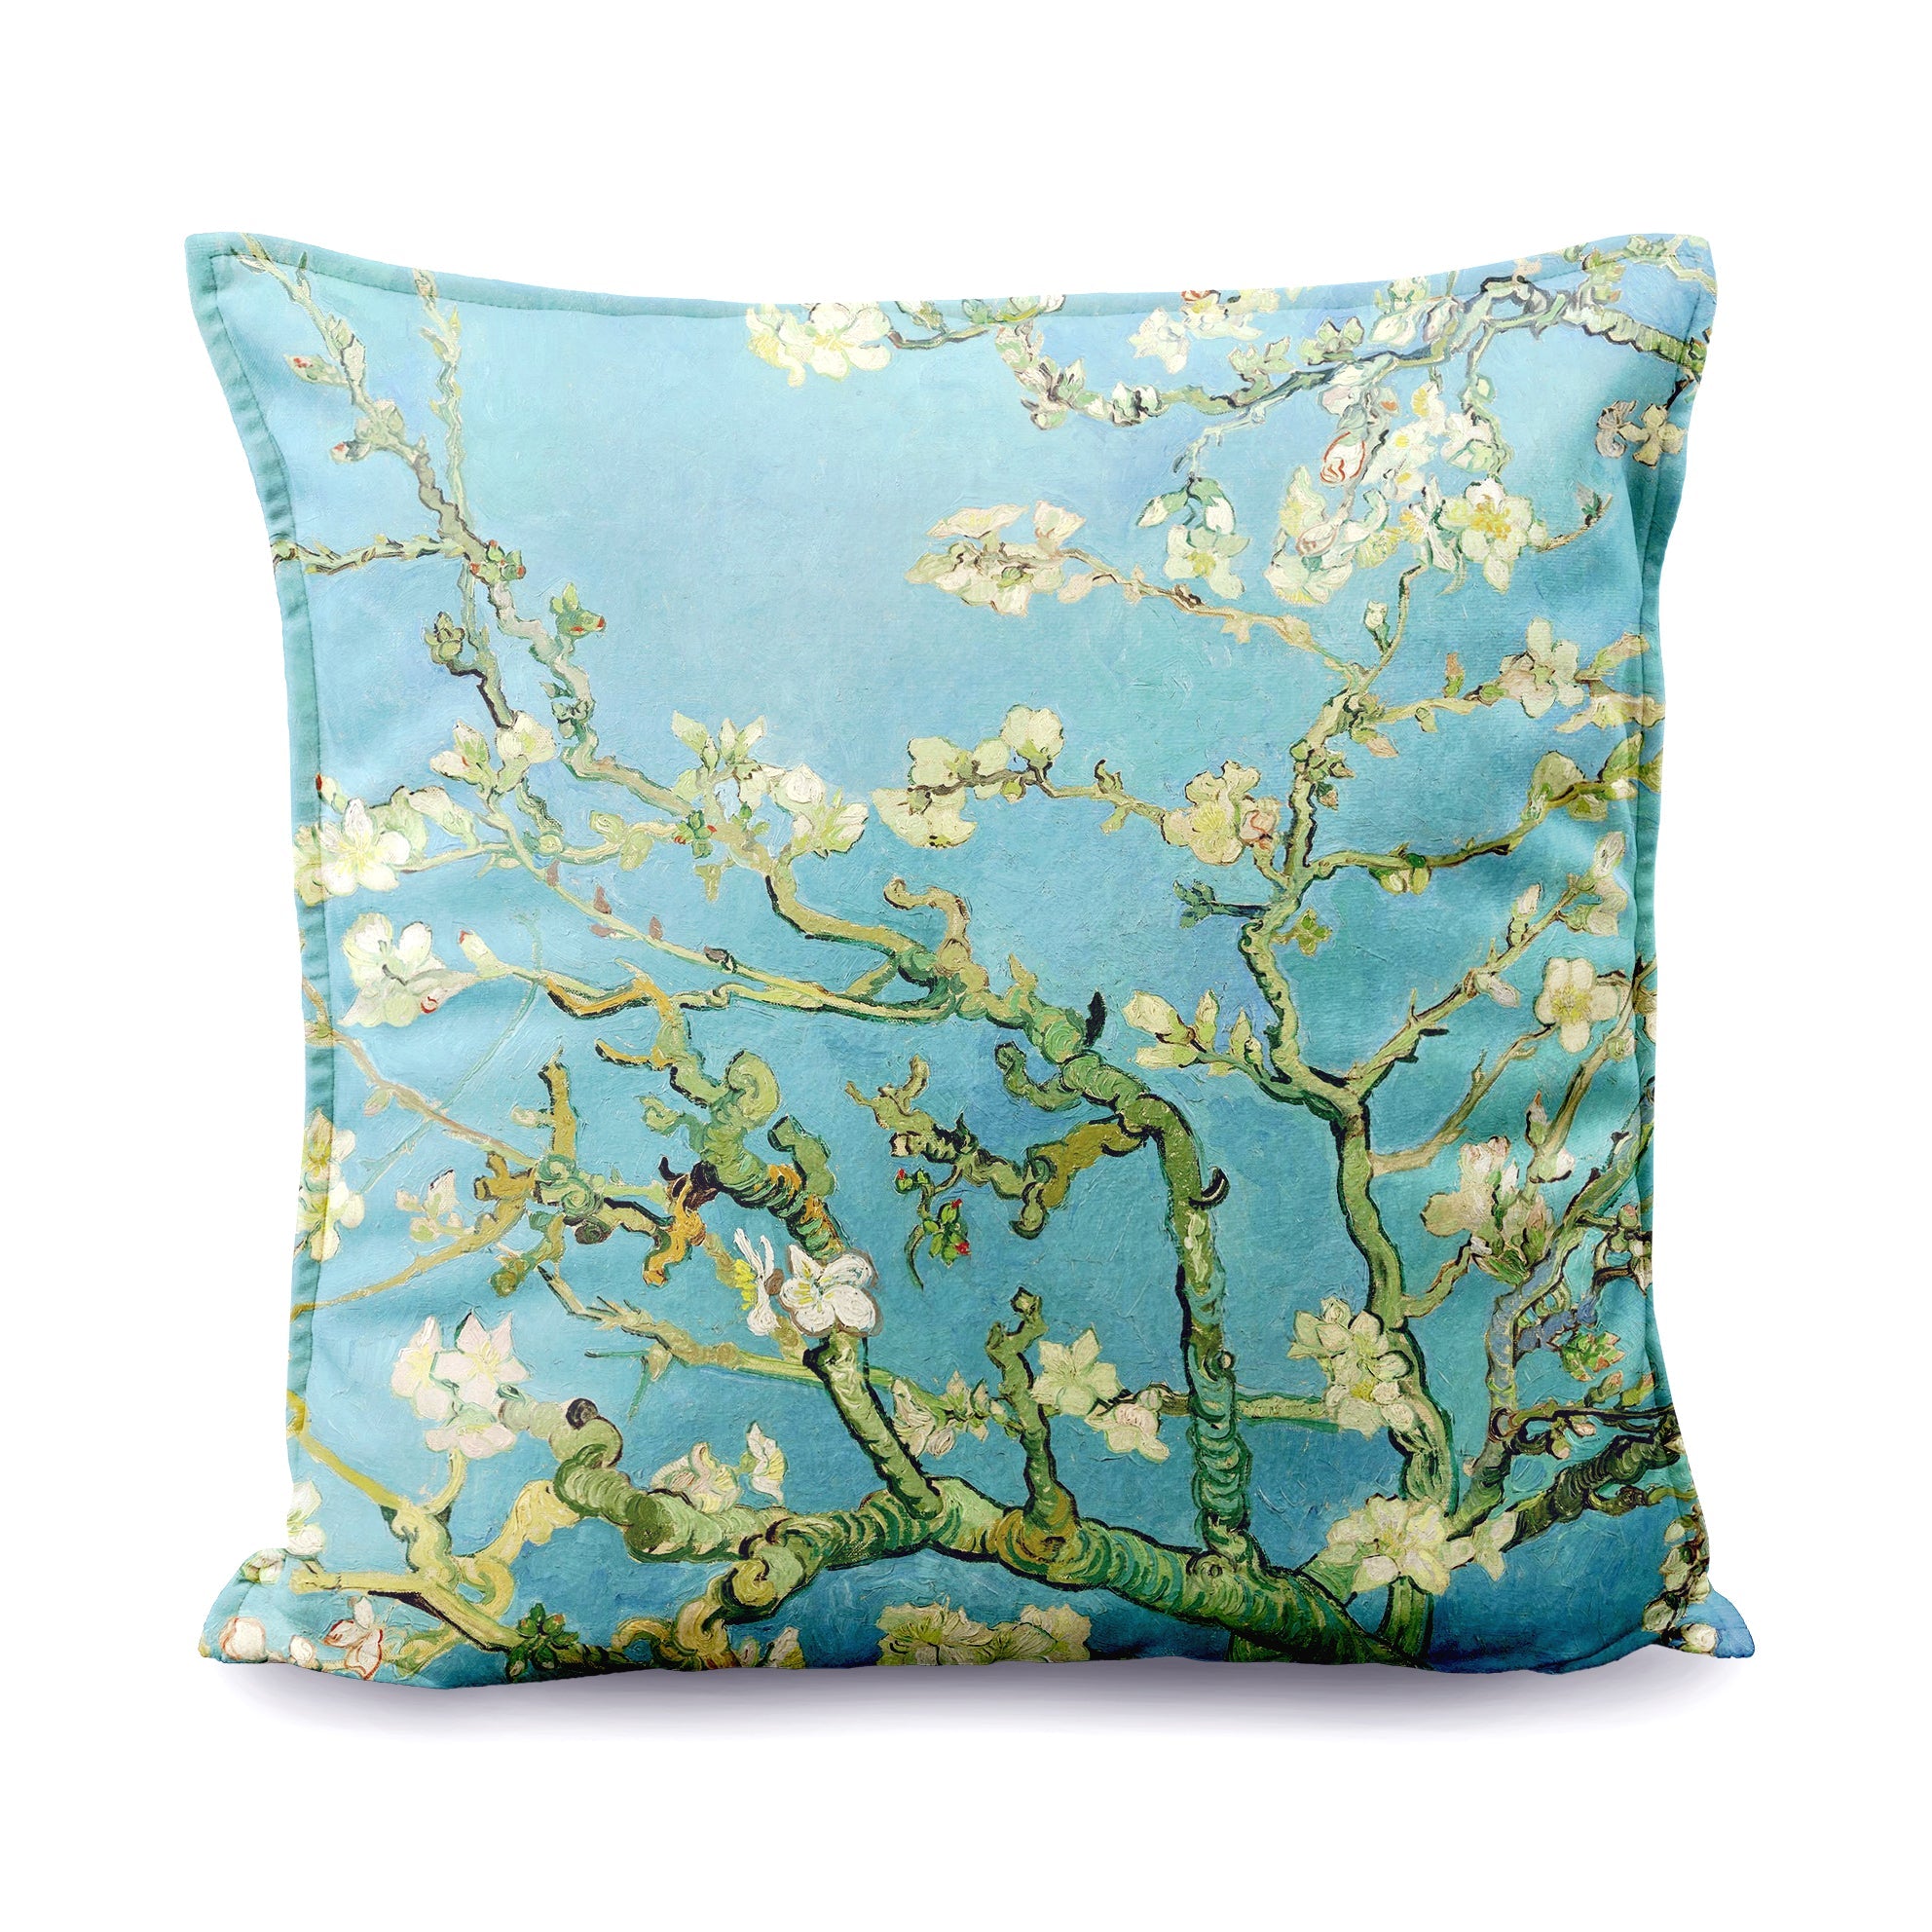 Dekoratyvinė pagalvėlė Vincent van Gogh "Almond Blossom"